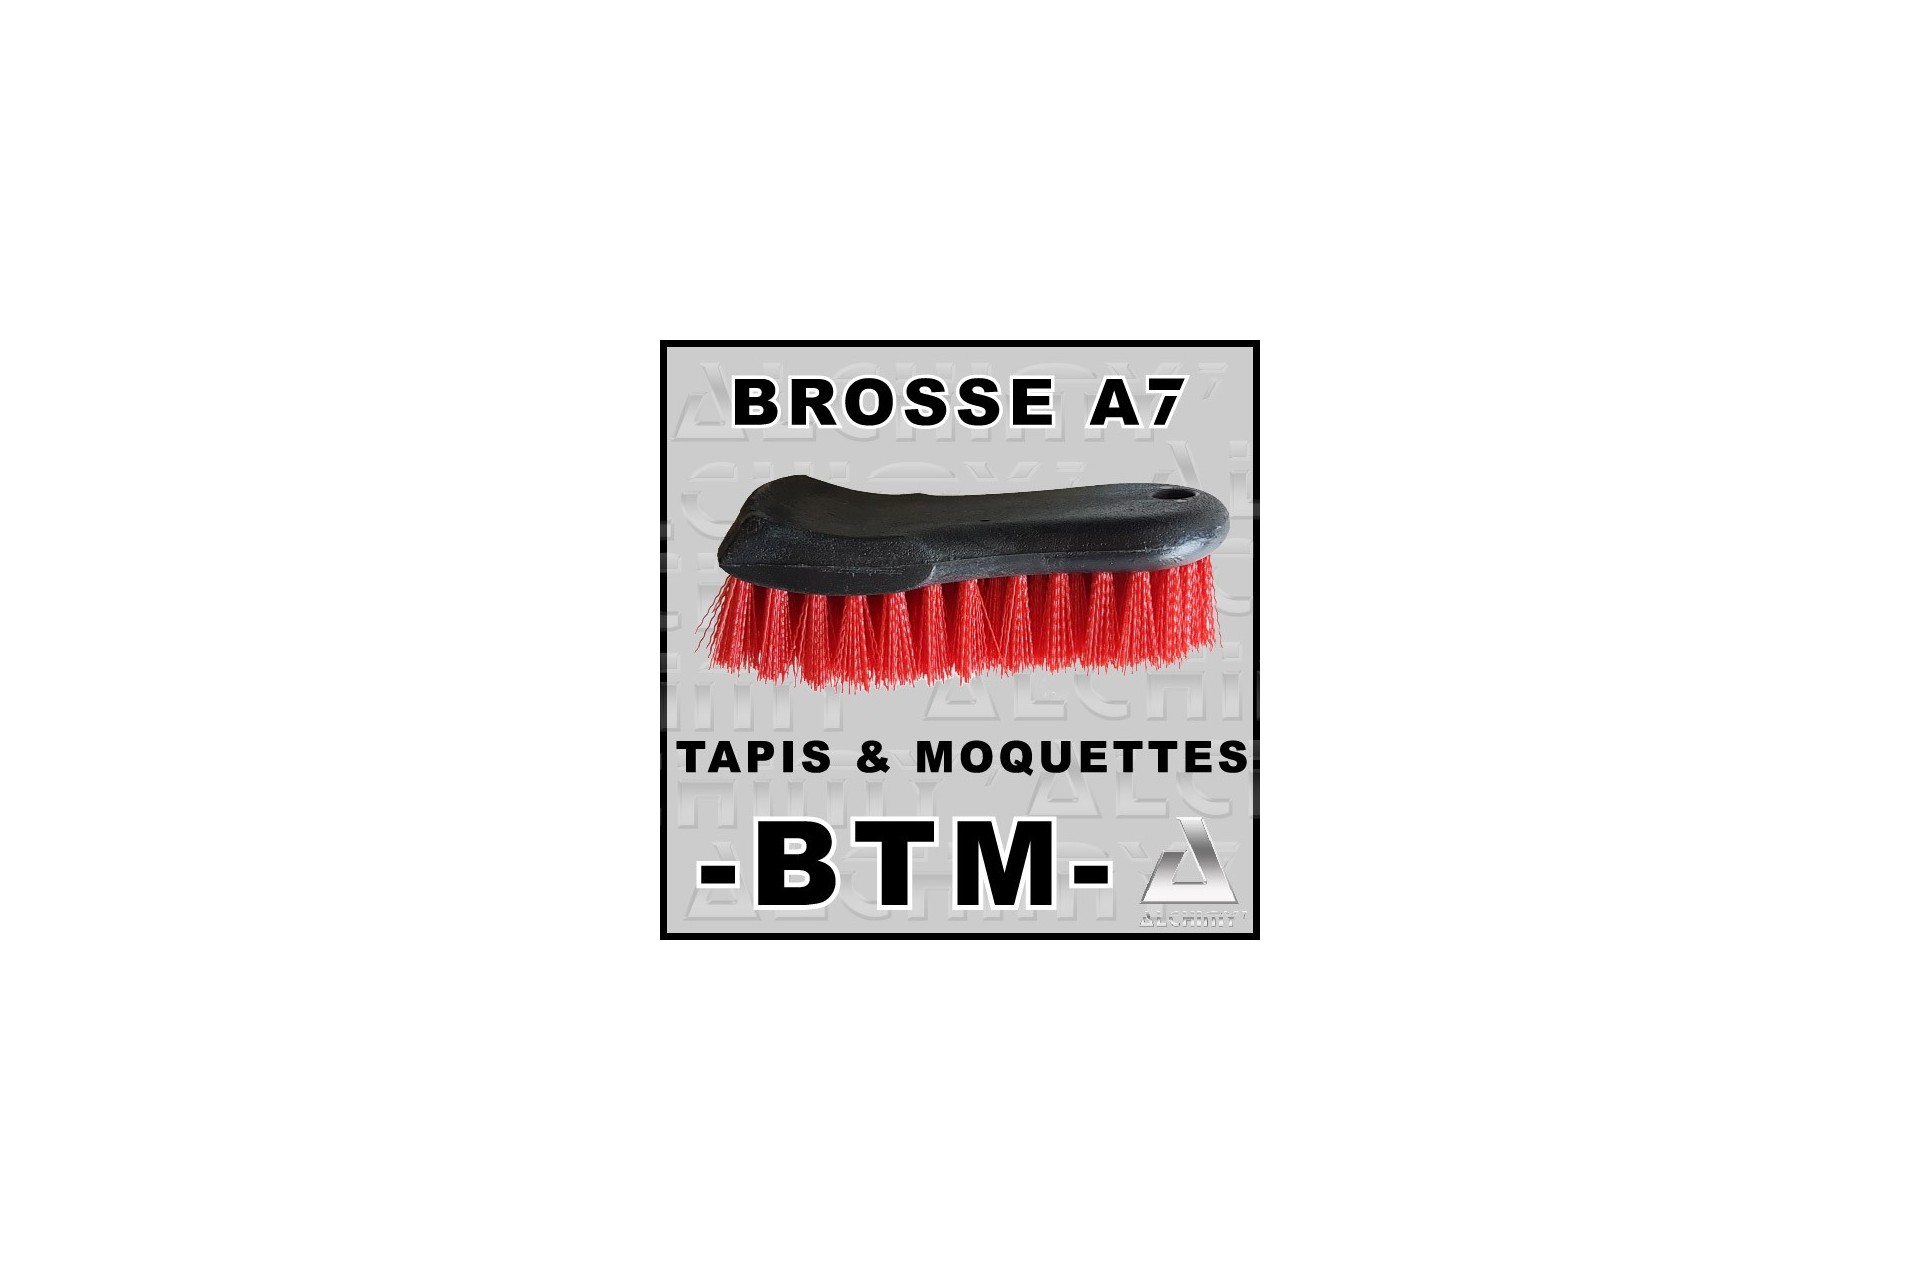 Brosse A7 BTM - Tapis & Moquettes - Alchimy